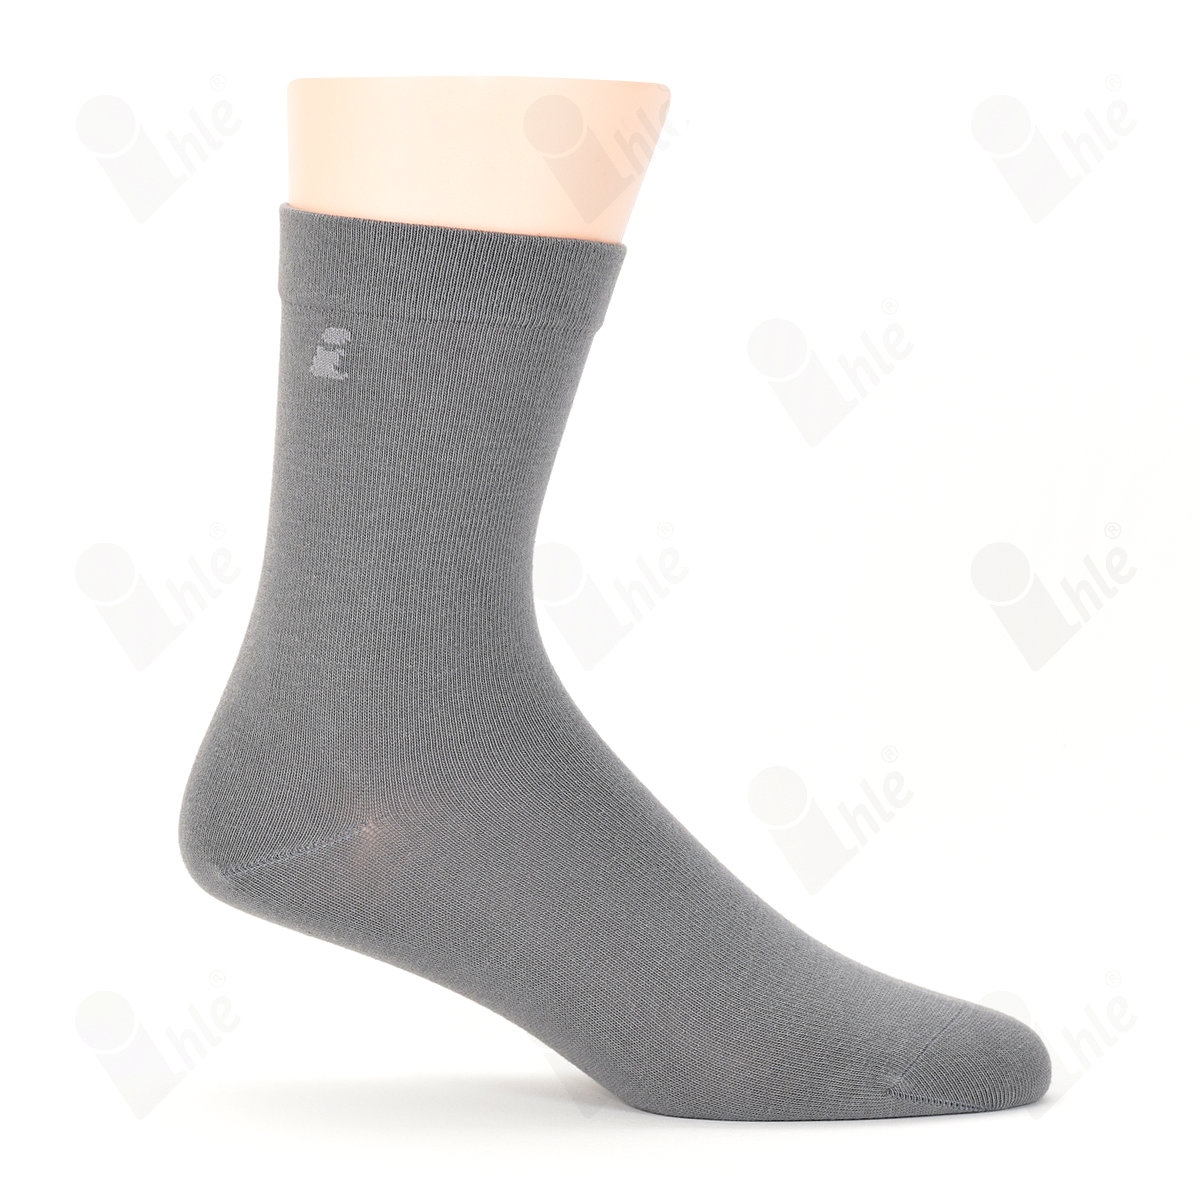 Ihle Socke klassisch grau Gr. 43-46